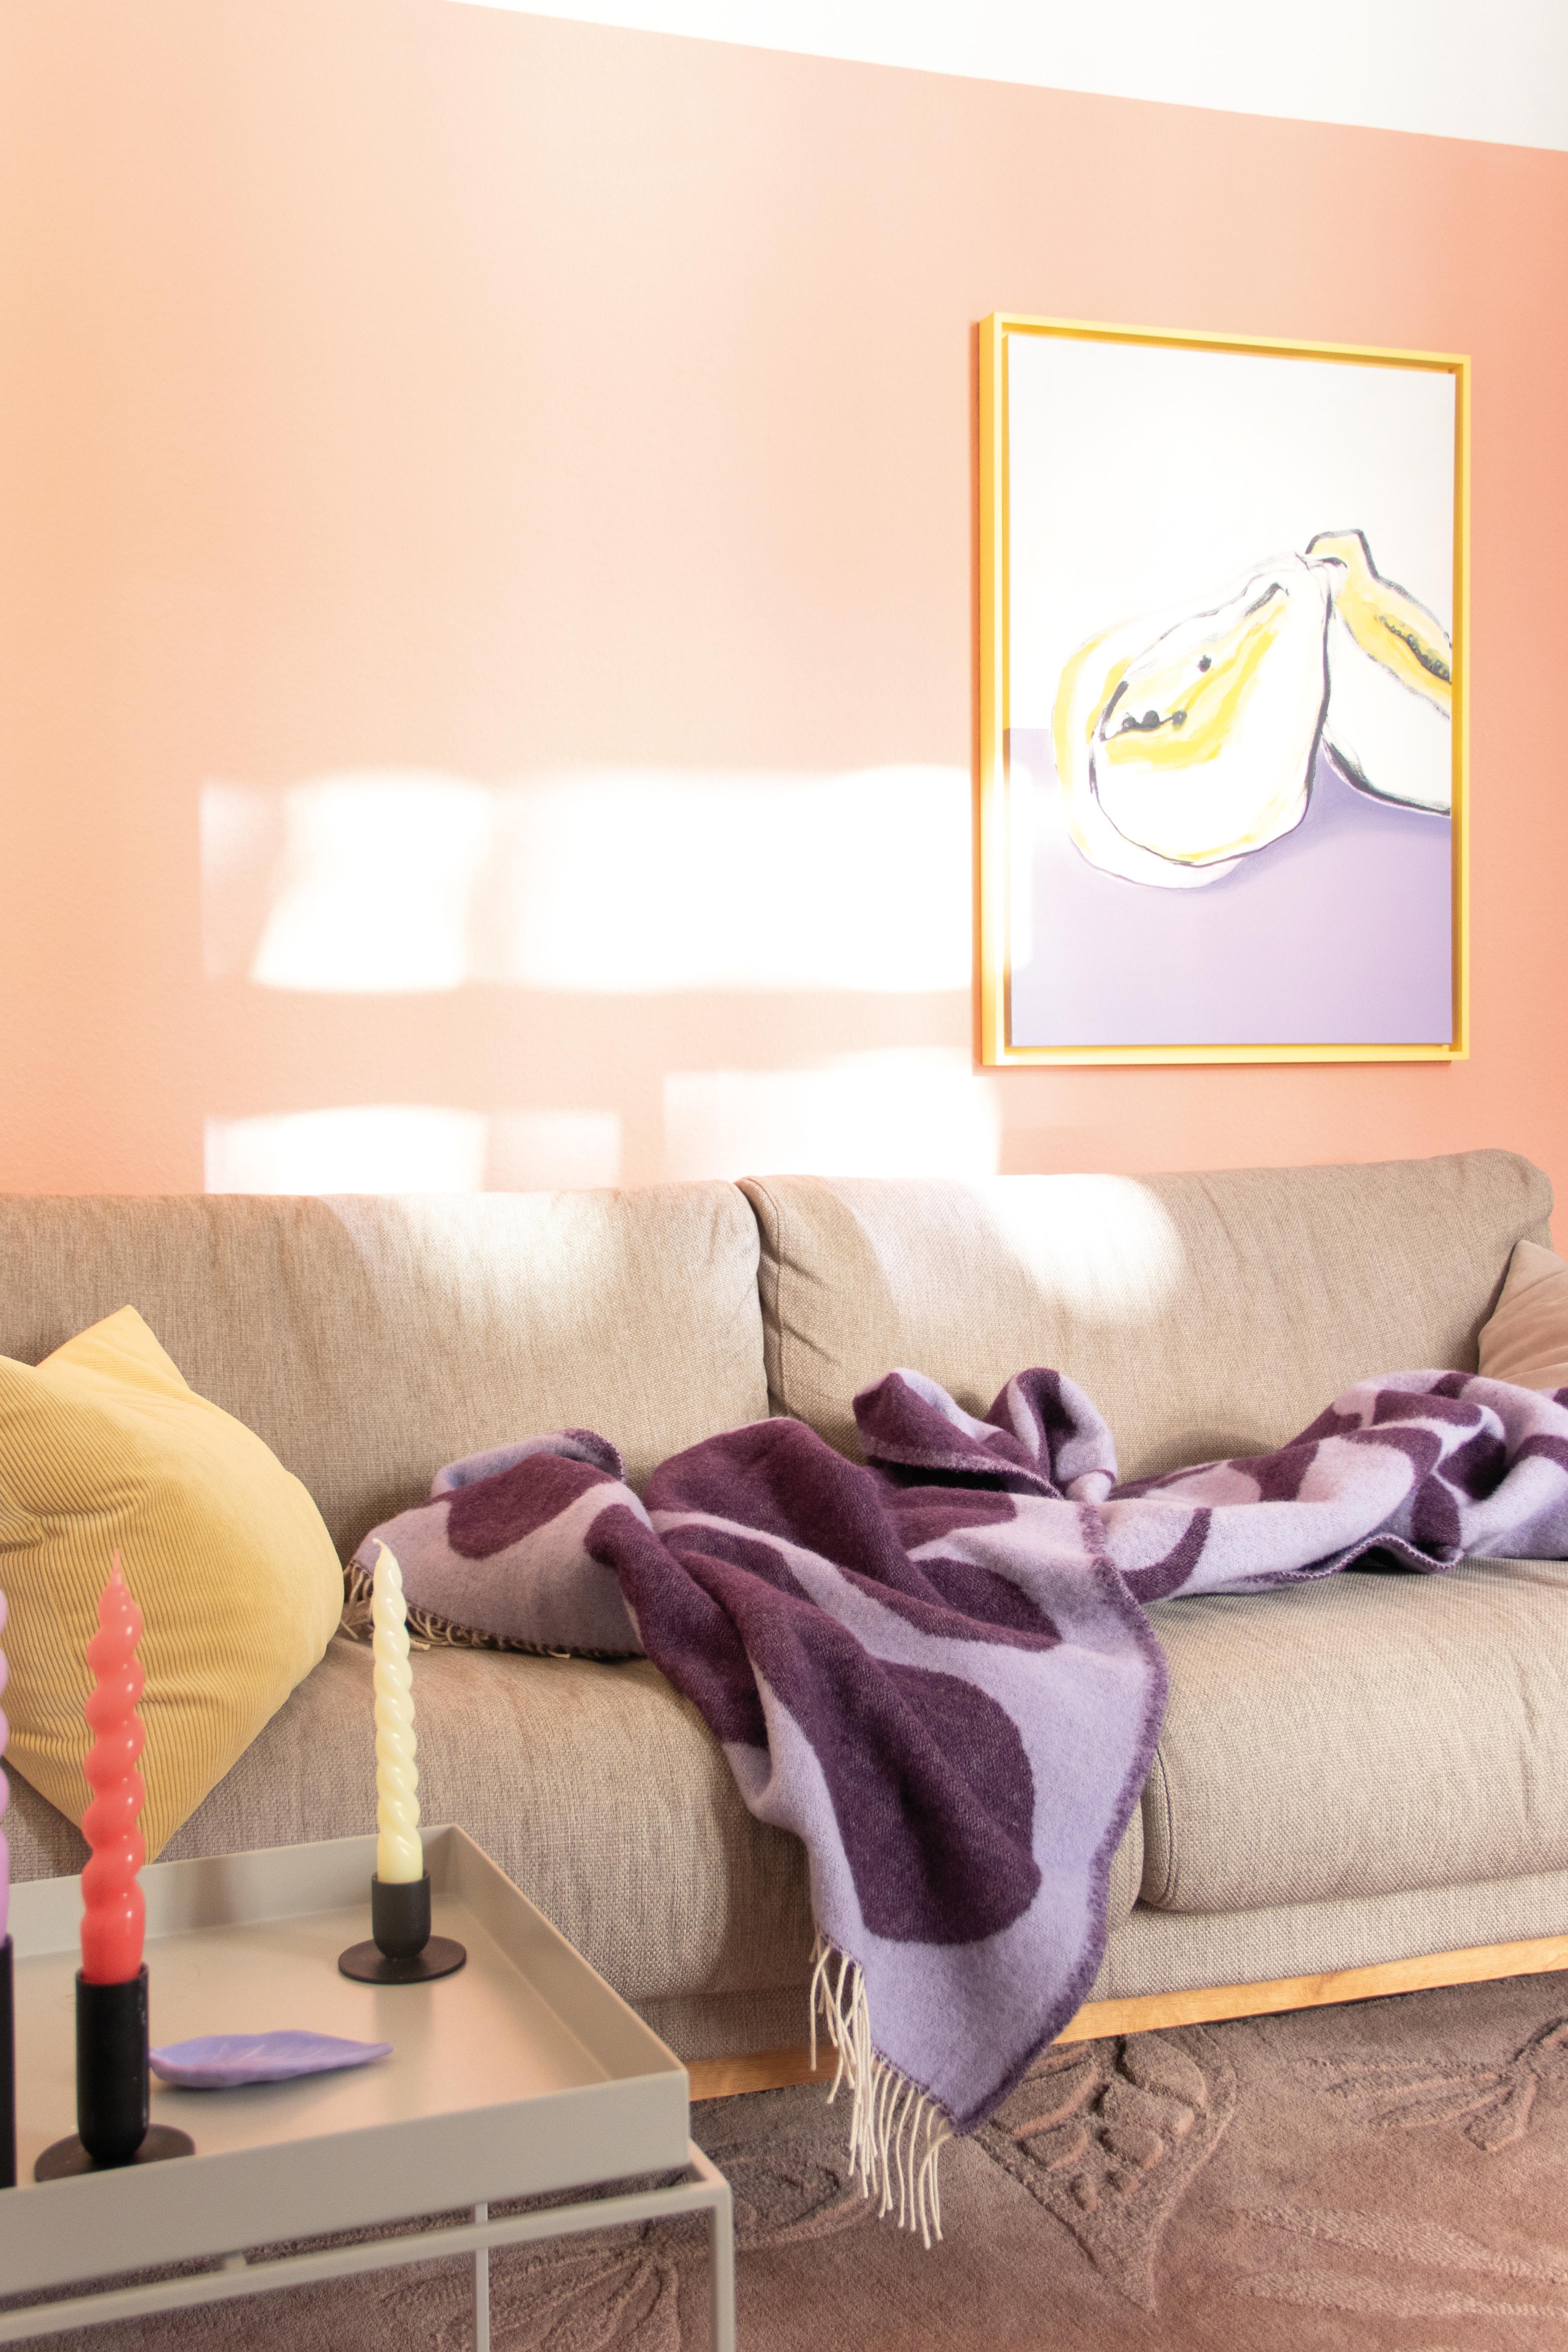 Hach, dieses #Licht
#Skandi #Kerze #Wandfarbe #Farbenfroh #Pastell  #Schatten #Wohnzimmer #Rosa #Couch